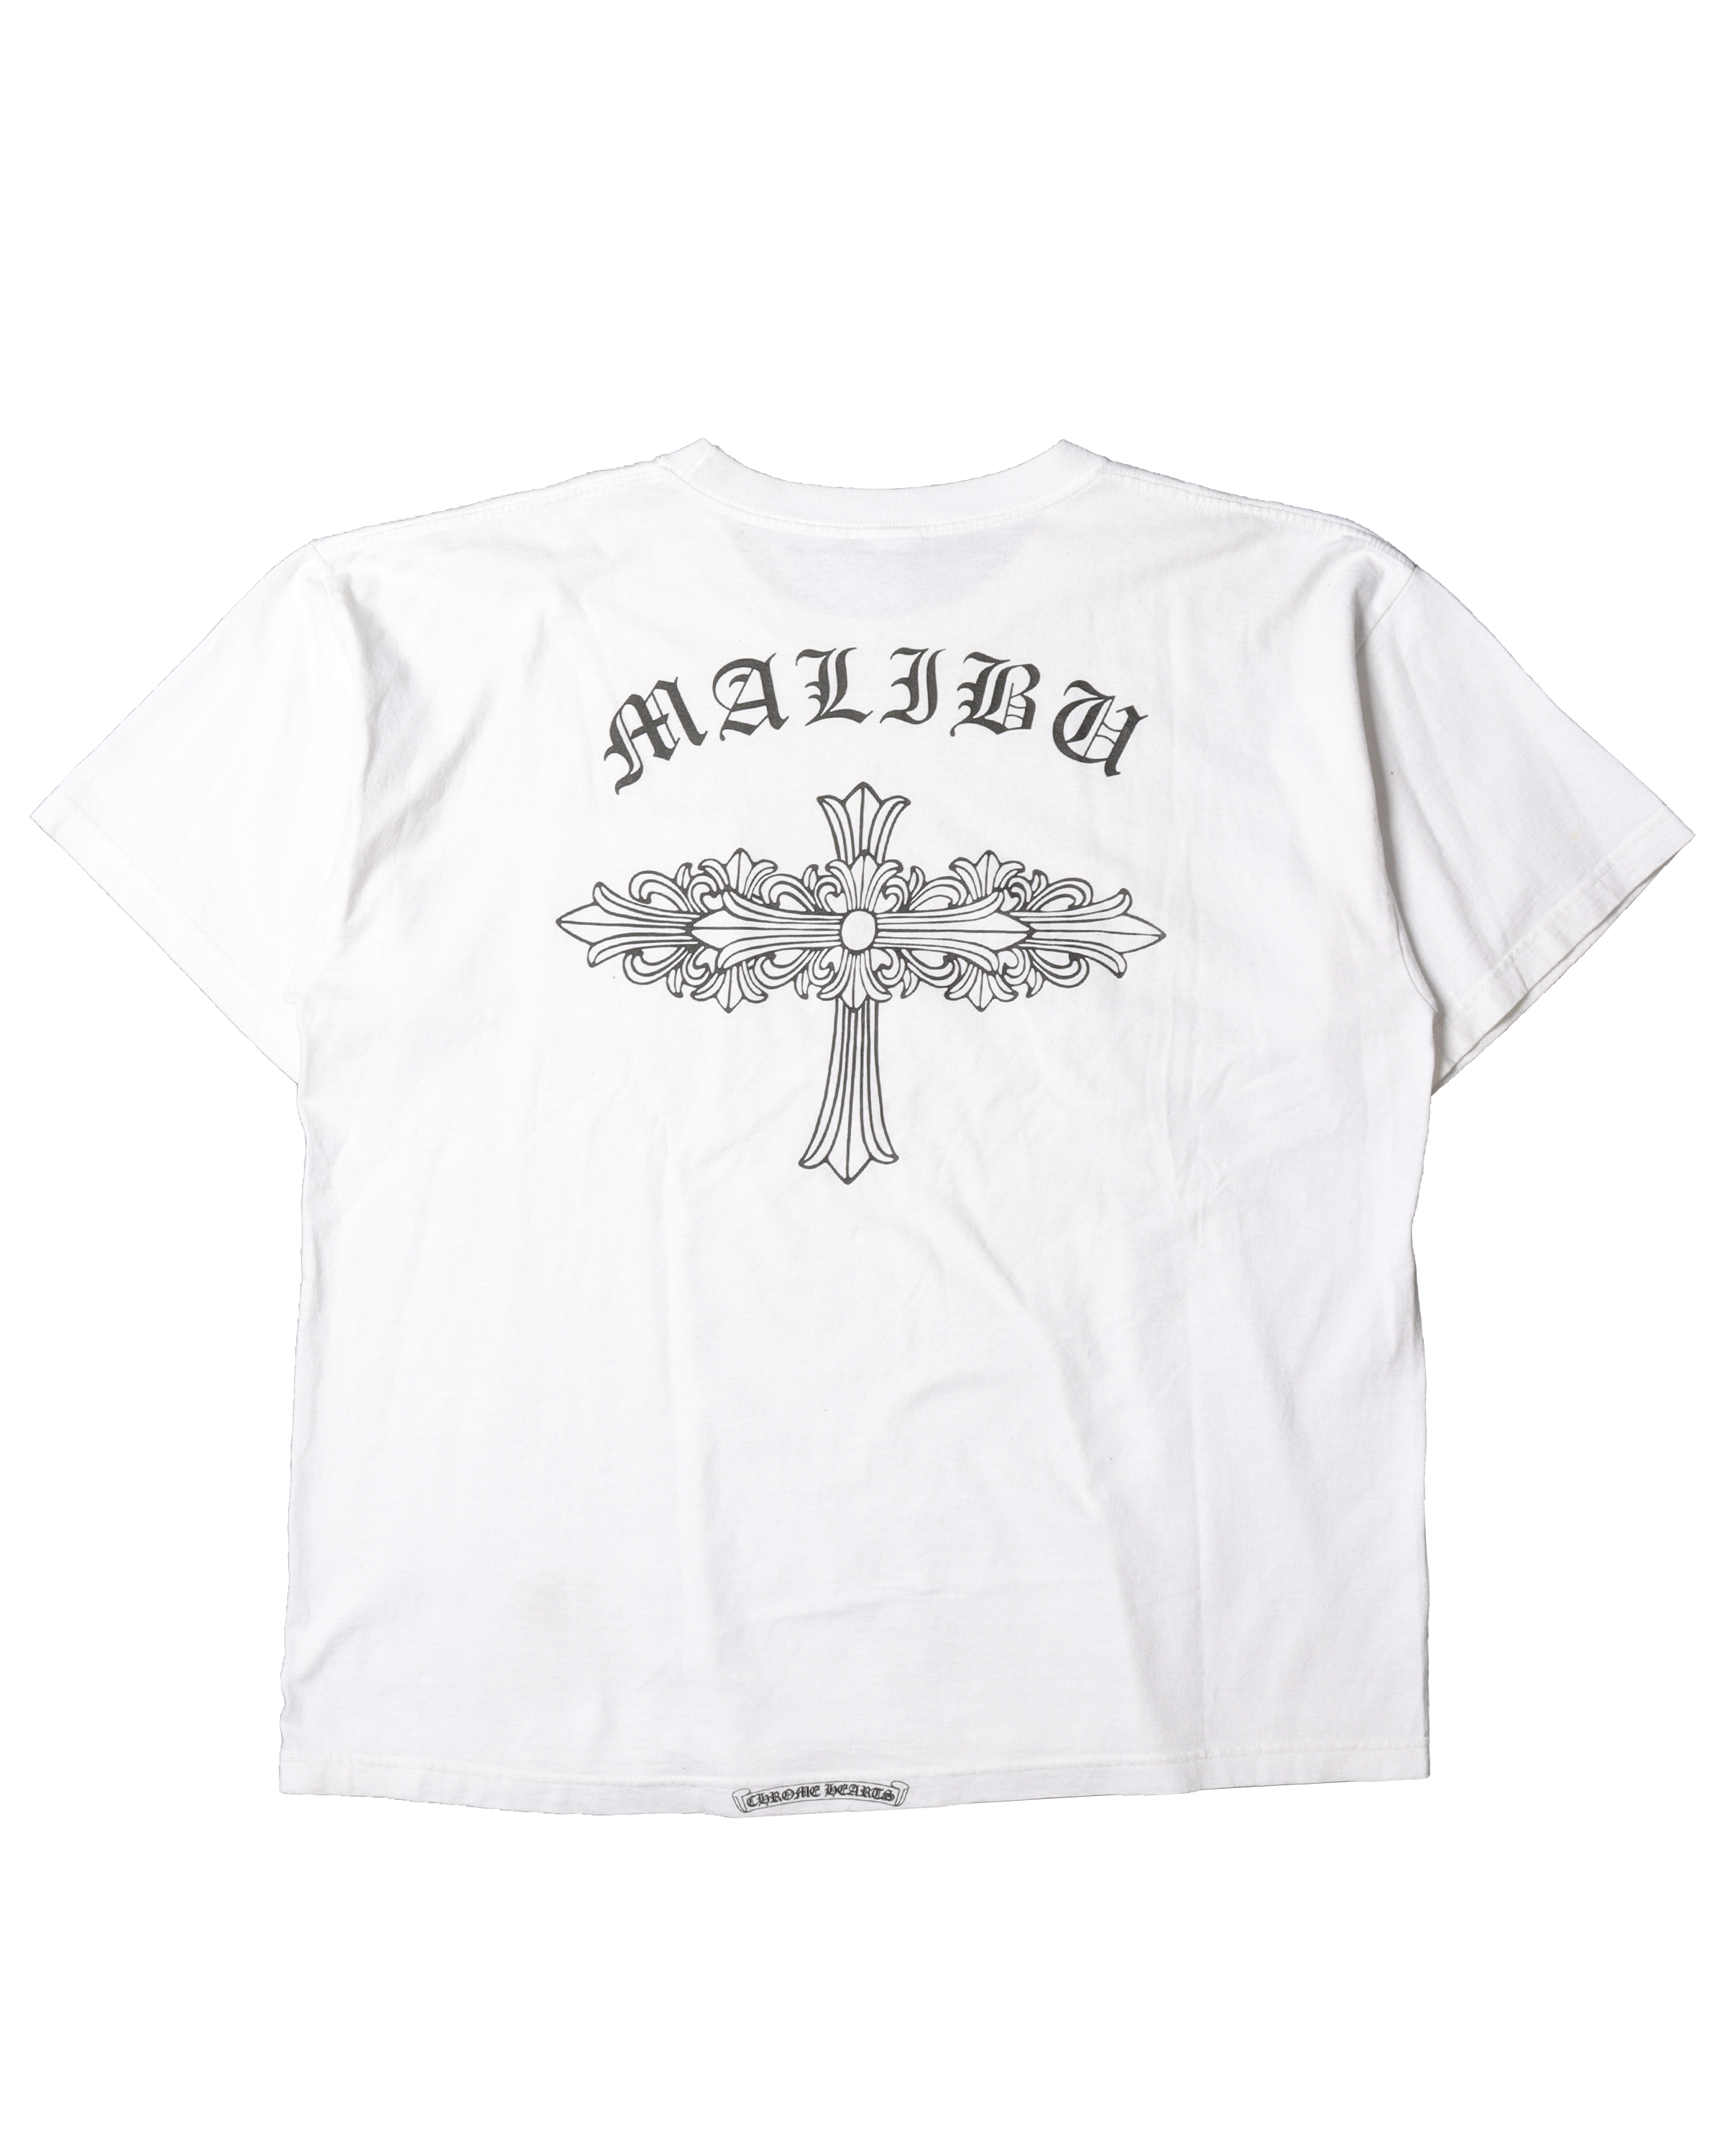 Malibu Cross T-shirt